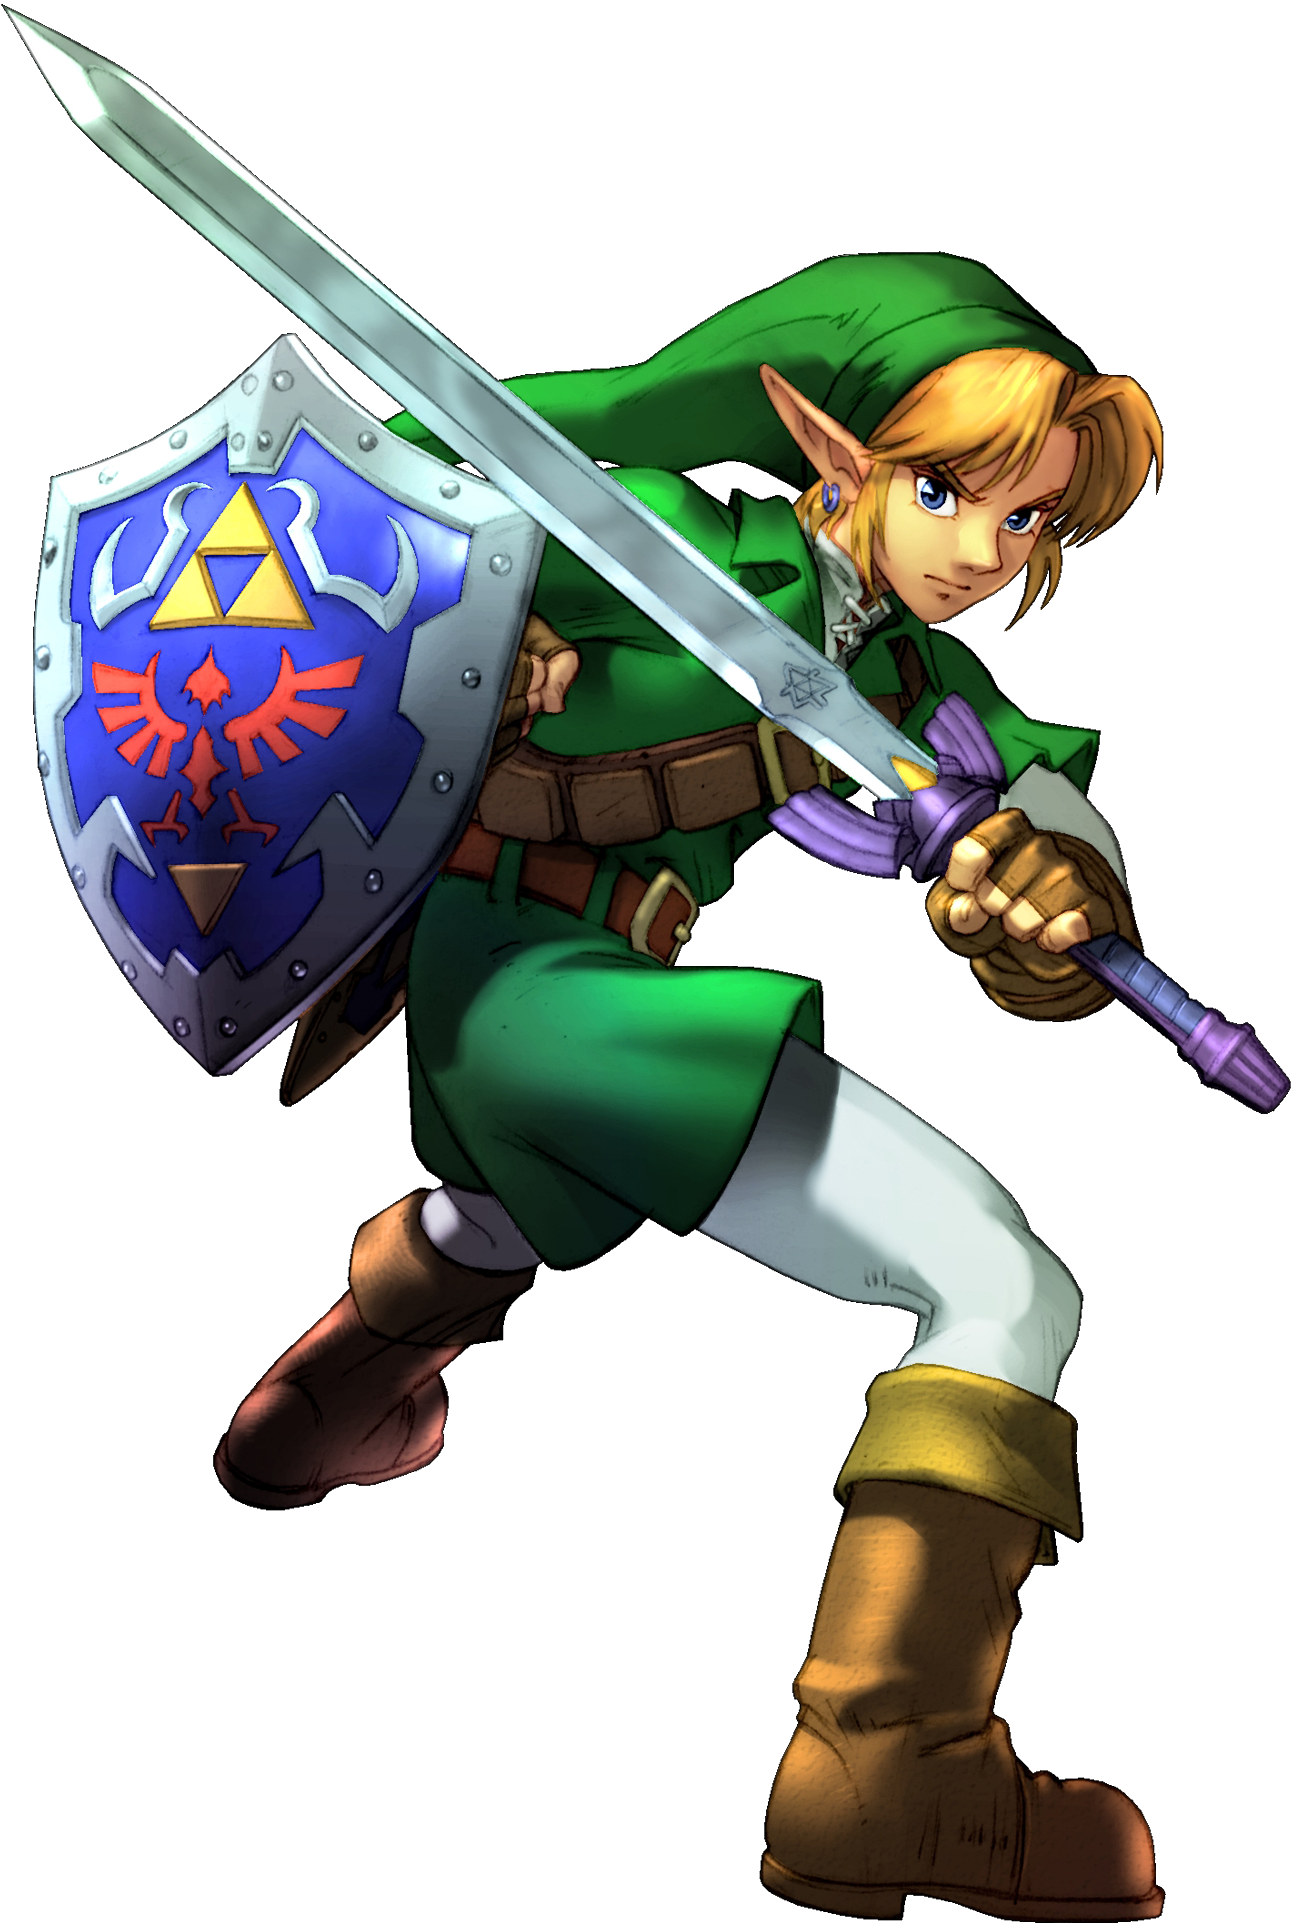 Download Zelda Link Png Free Download - Legend Of Zelda Link Png